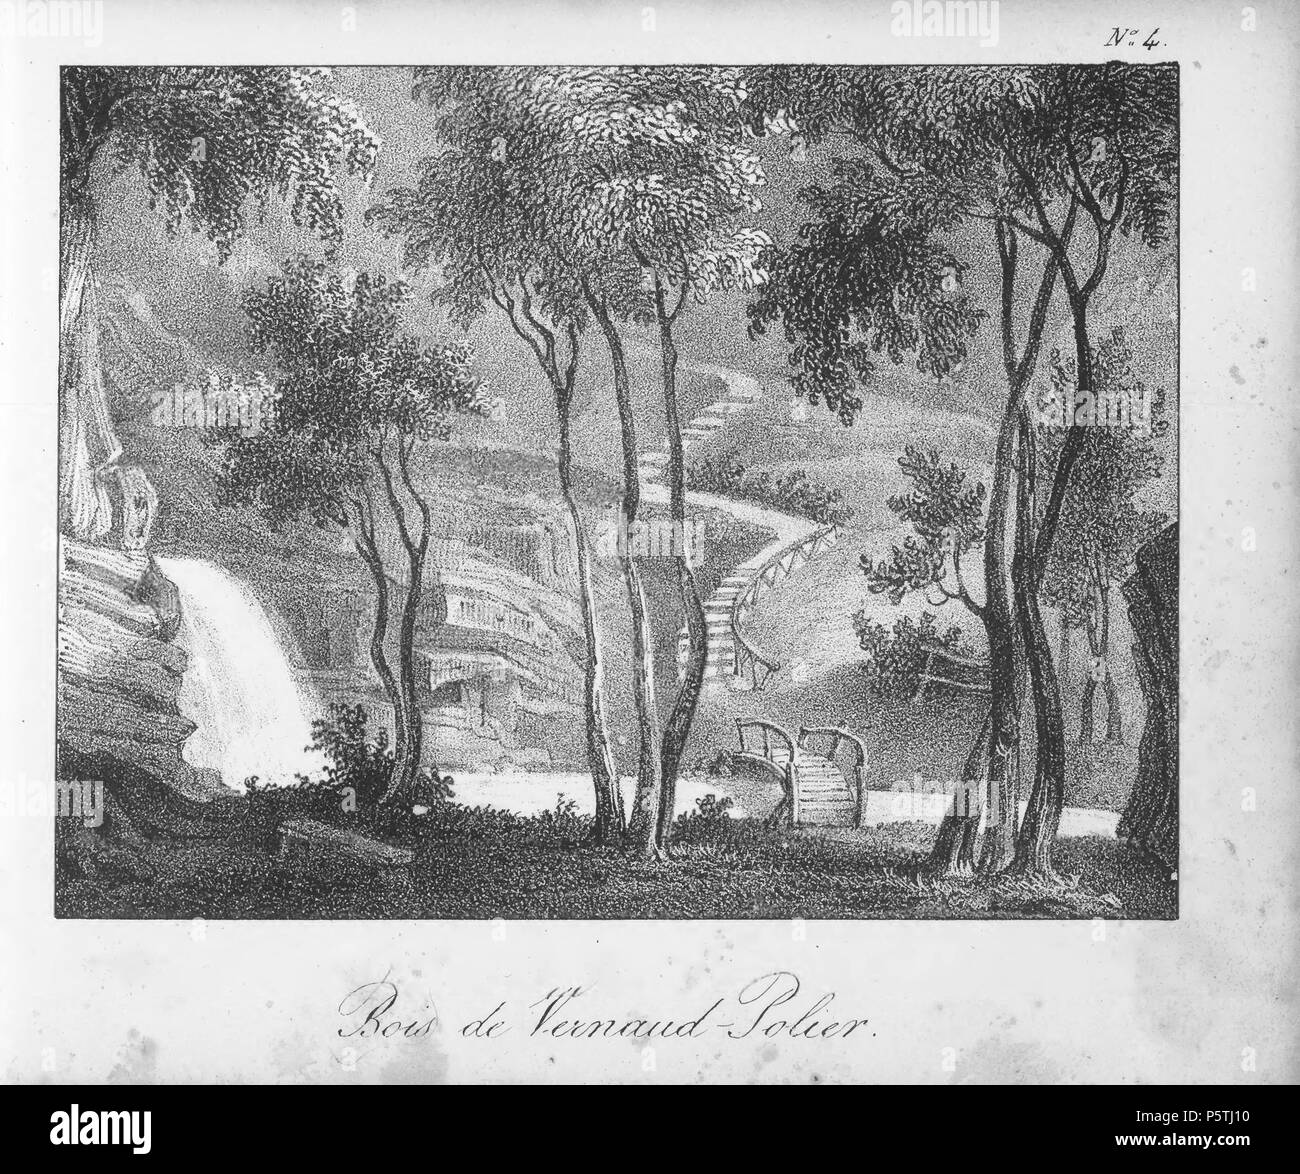 N/A. Français : Livre: 'La Suisse en miniature : 100 vues lithographiées' ;  Bois de Vernaud-Polier . 1831. Rothmüller, Jacques ; Chavannes, Herminie ;  Frey, Samuel ; Engelmann, Godefroy ; Courtois, Jean-Baptiste